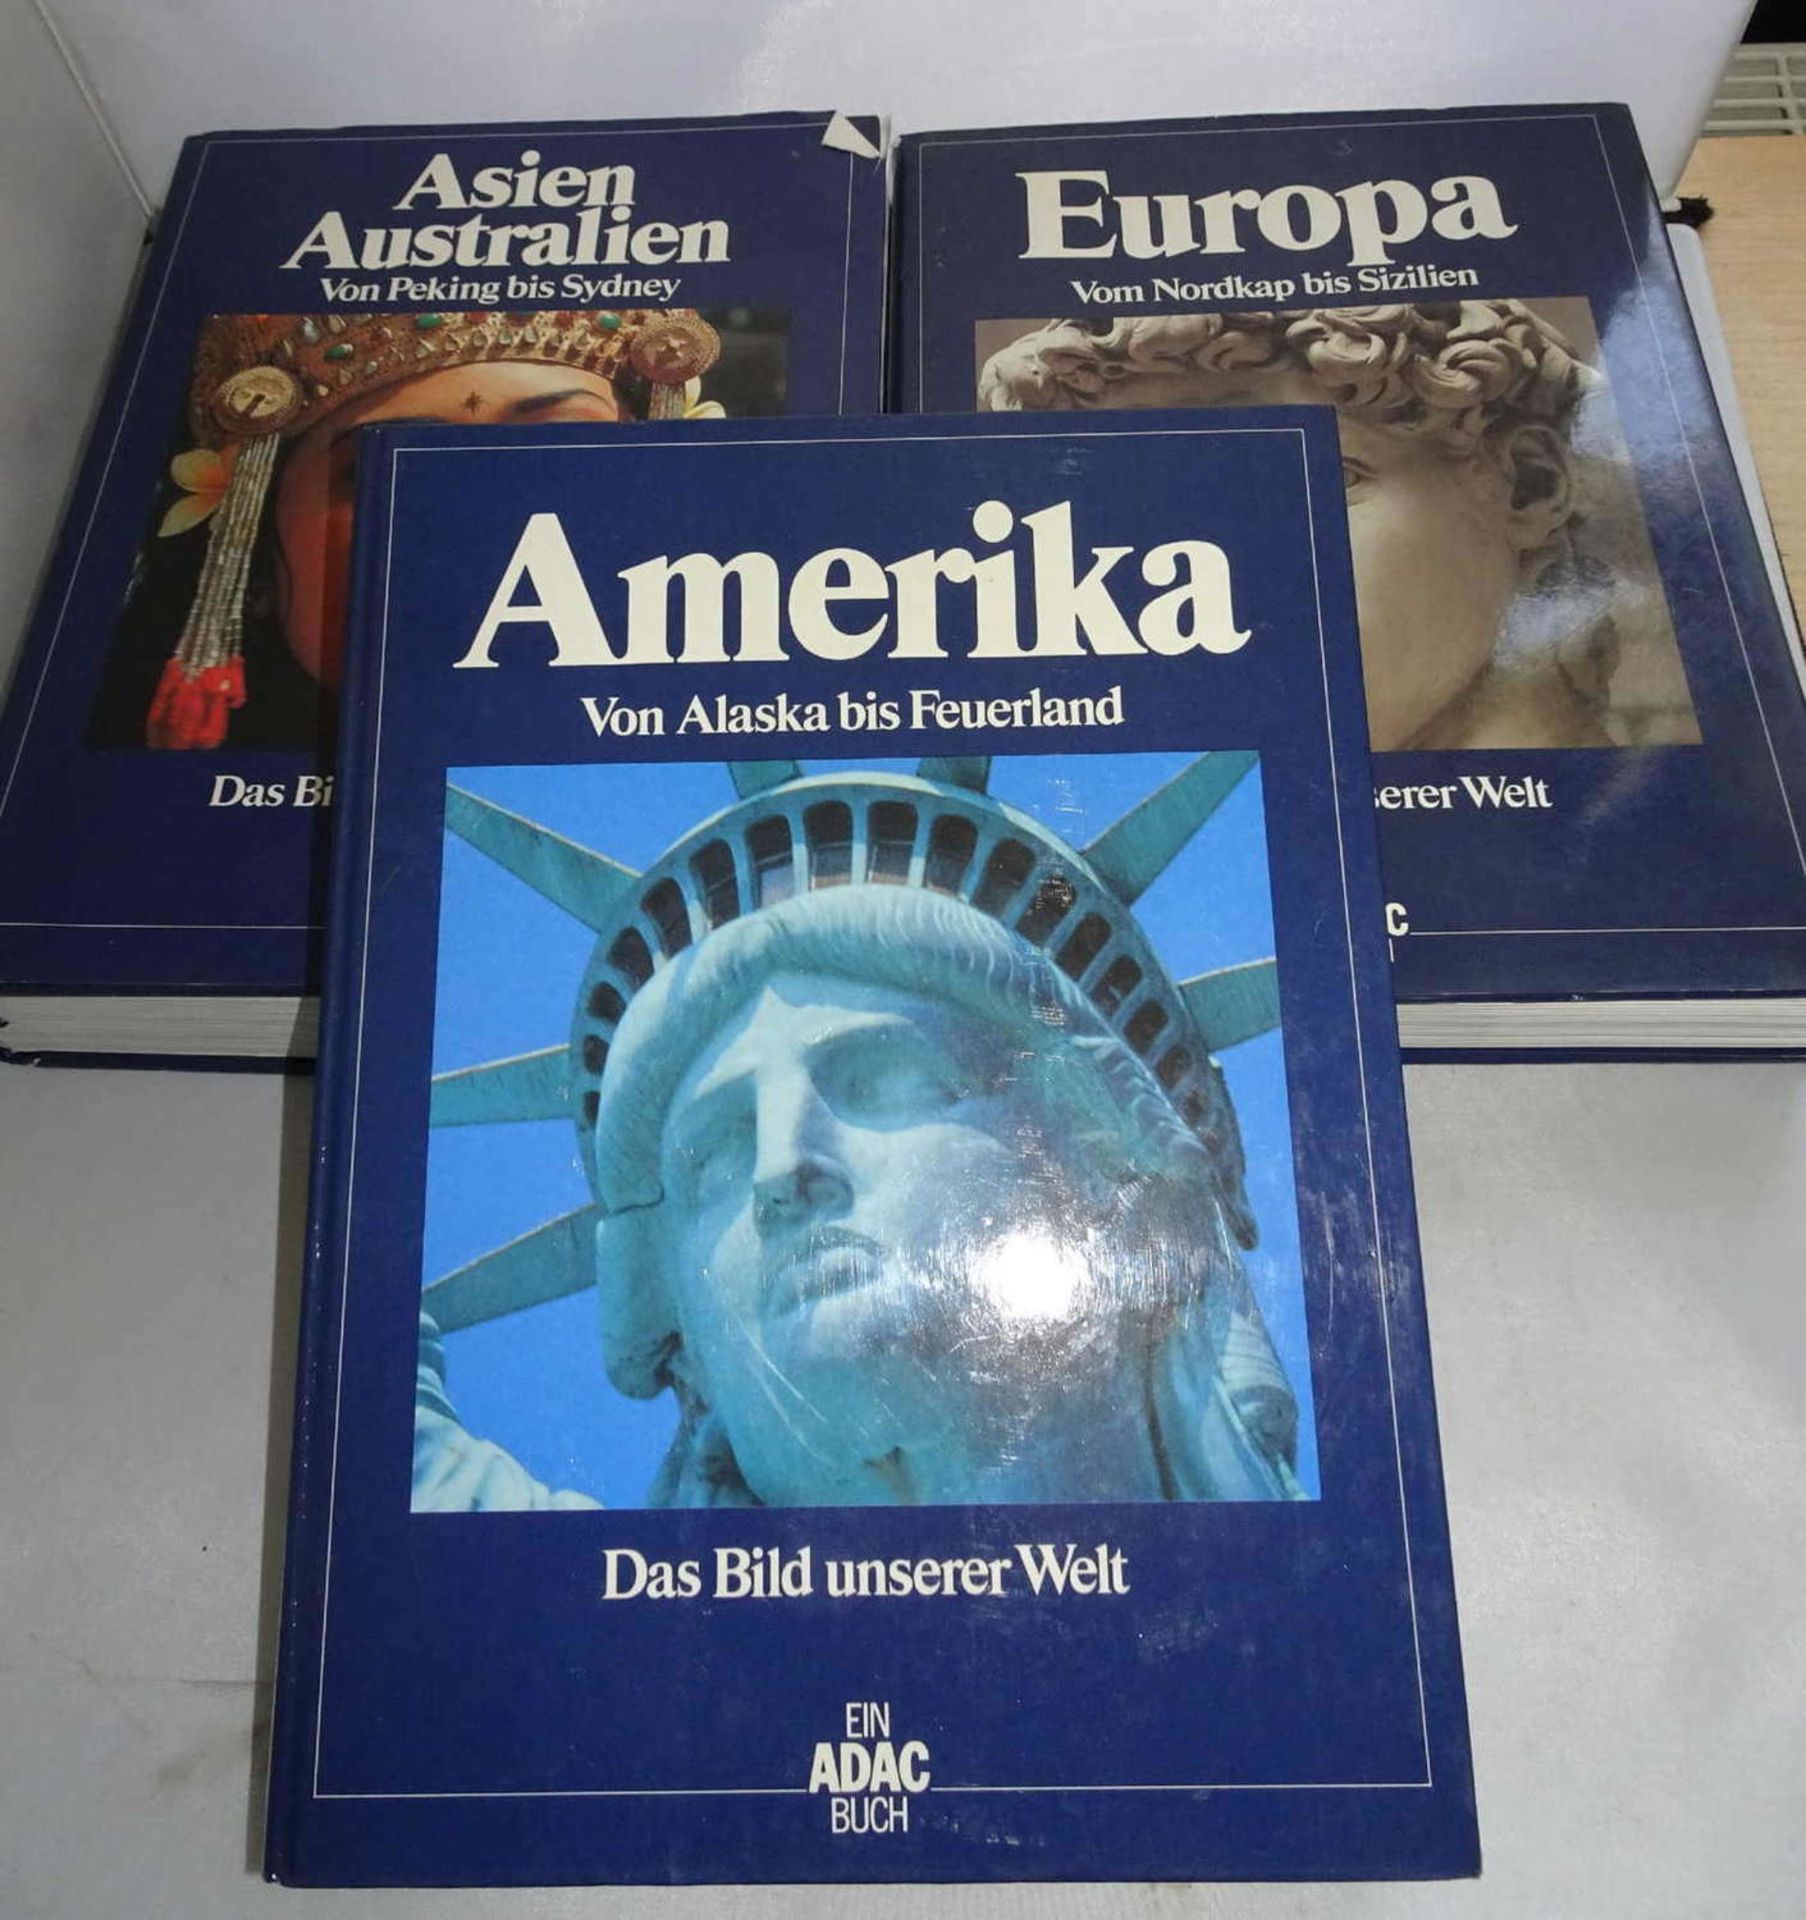 3 ADAC Bücher "Asien-Australien", "Europa" und "Amerika" 3 ADAC books "Asia-Australia", "Europe"